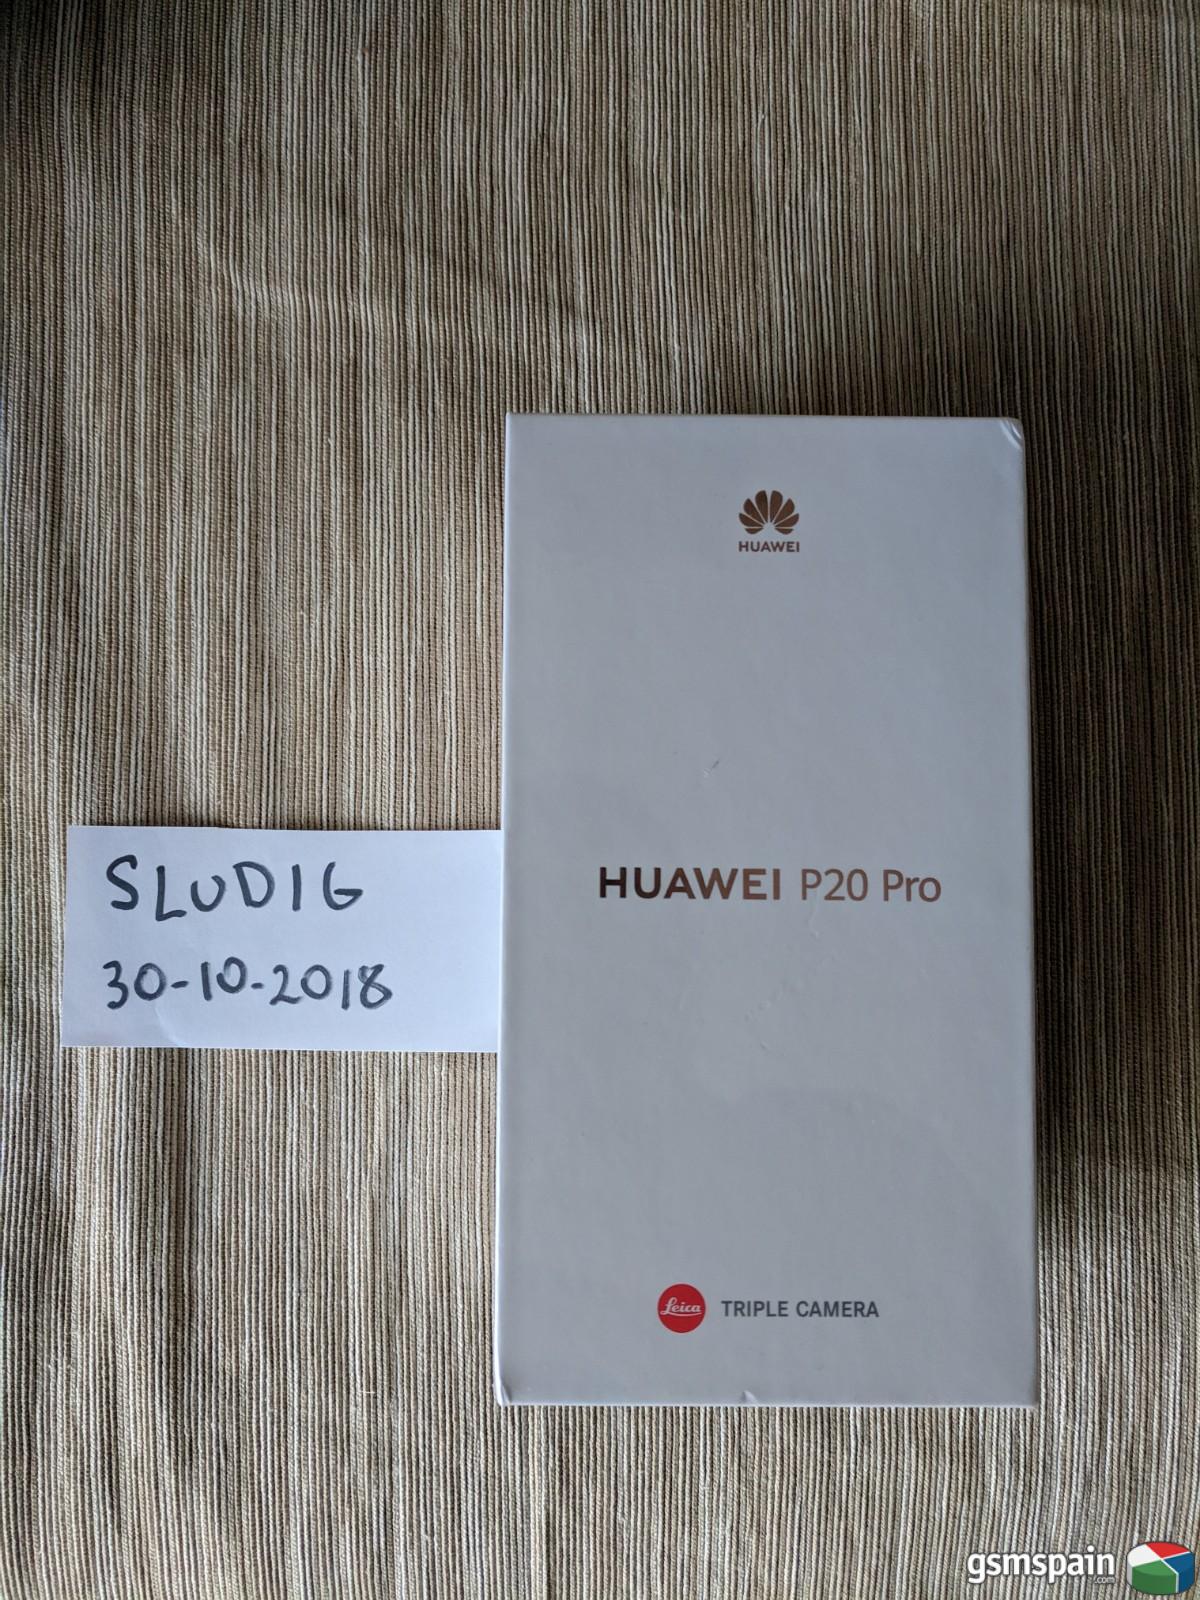 [VENDO] Huawei P20 Pro 128gb Precintado y con factura espaola 457!!!